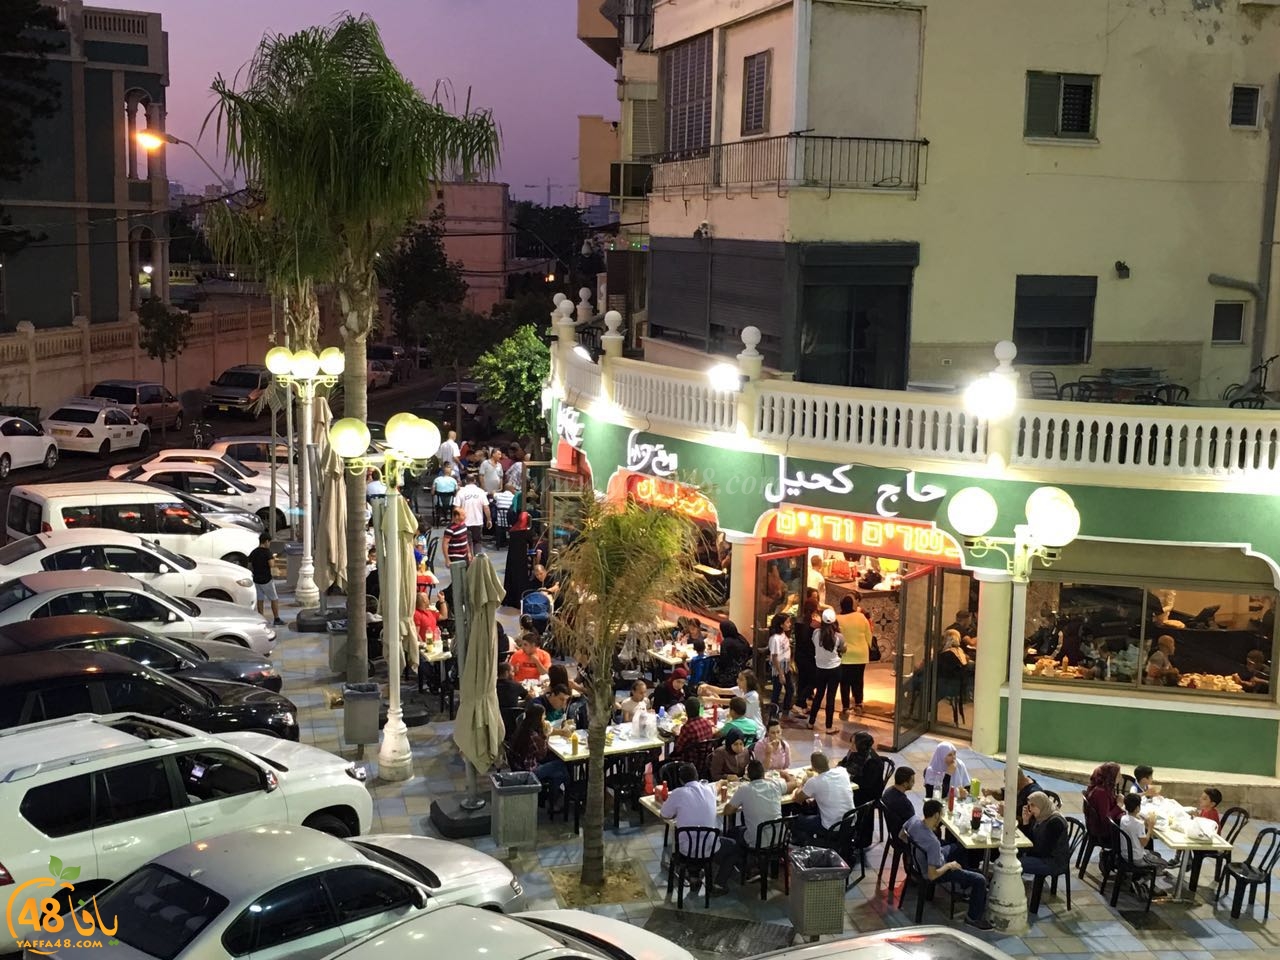  اليوم: افتتاح فرع الشاورما والمشاوي لمطعم حاج كحيل في دوار الساعة بيافا